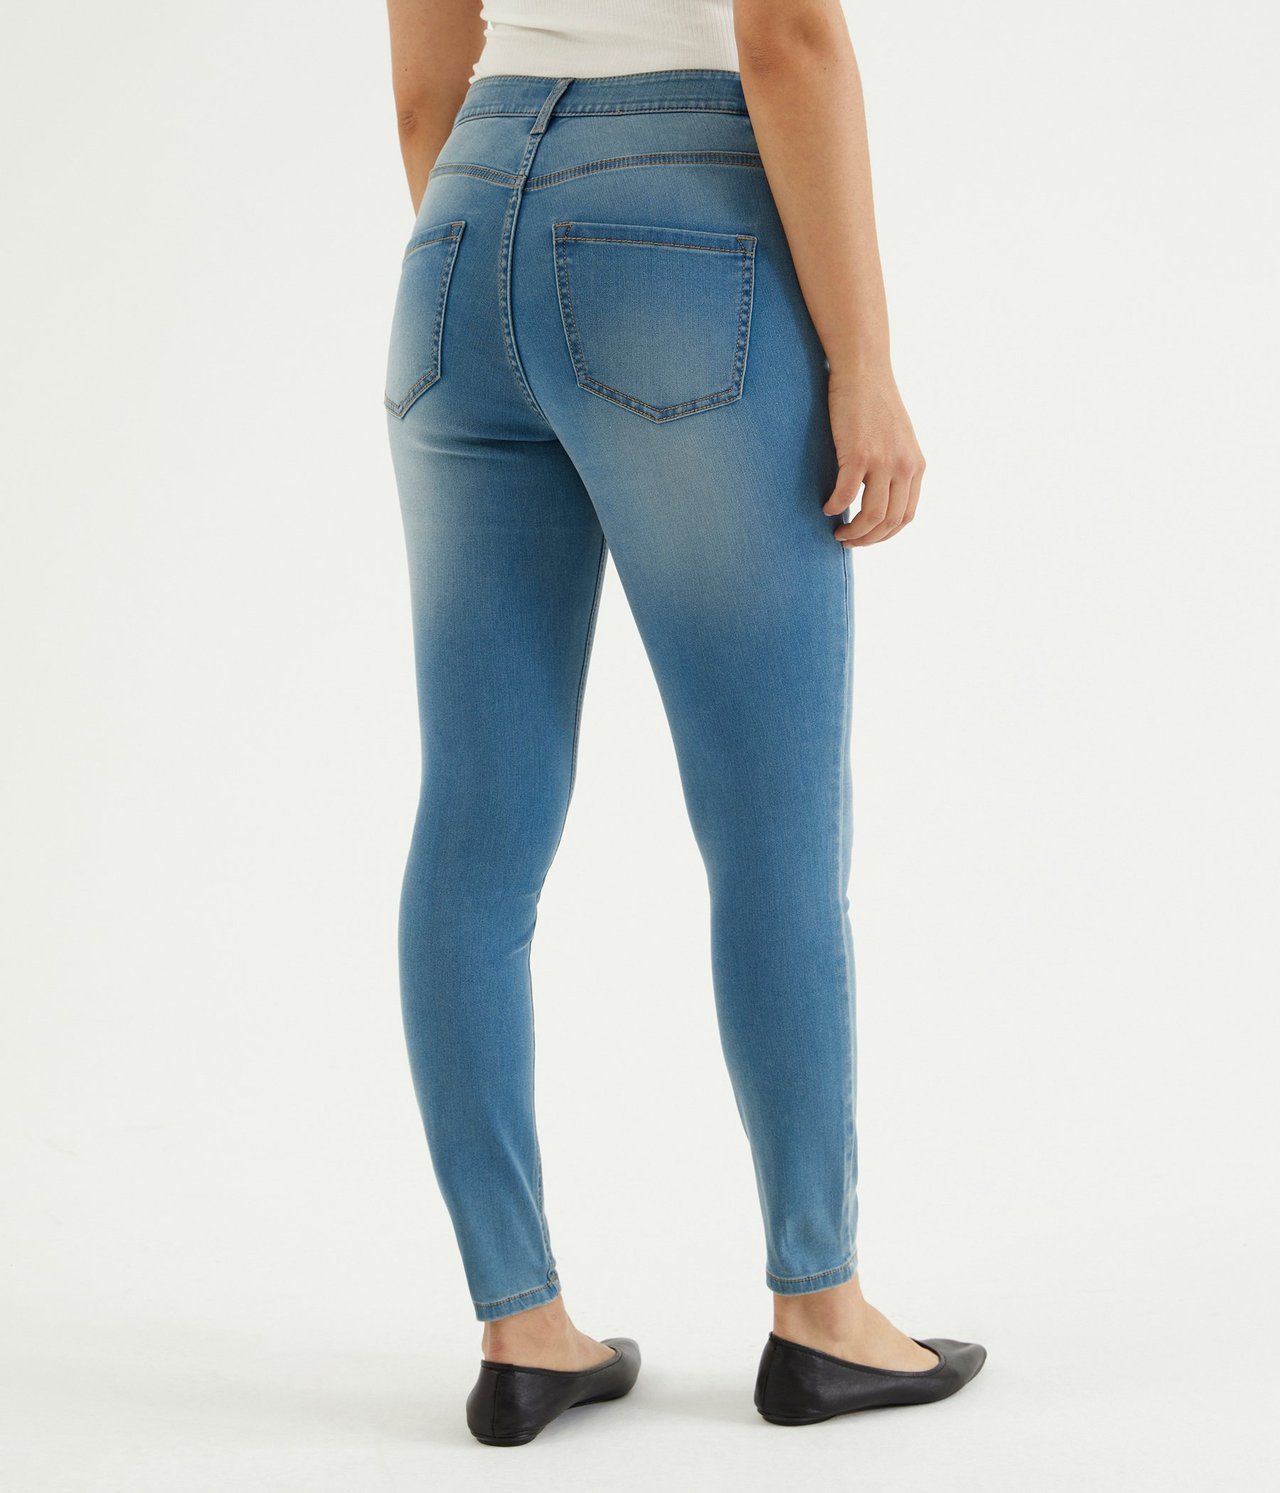 Super slim jeans short leg Denimi - null - 0